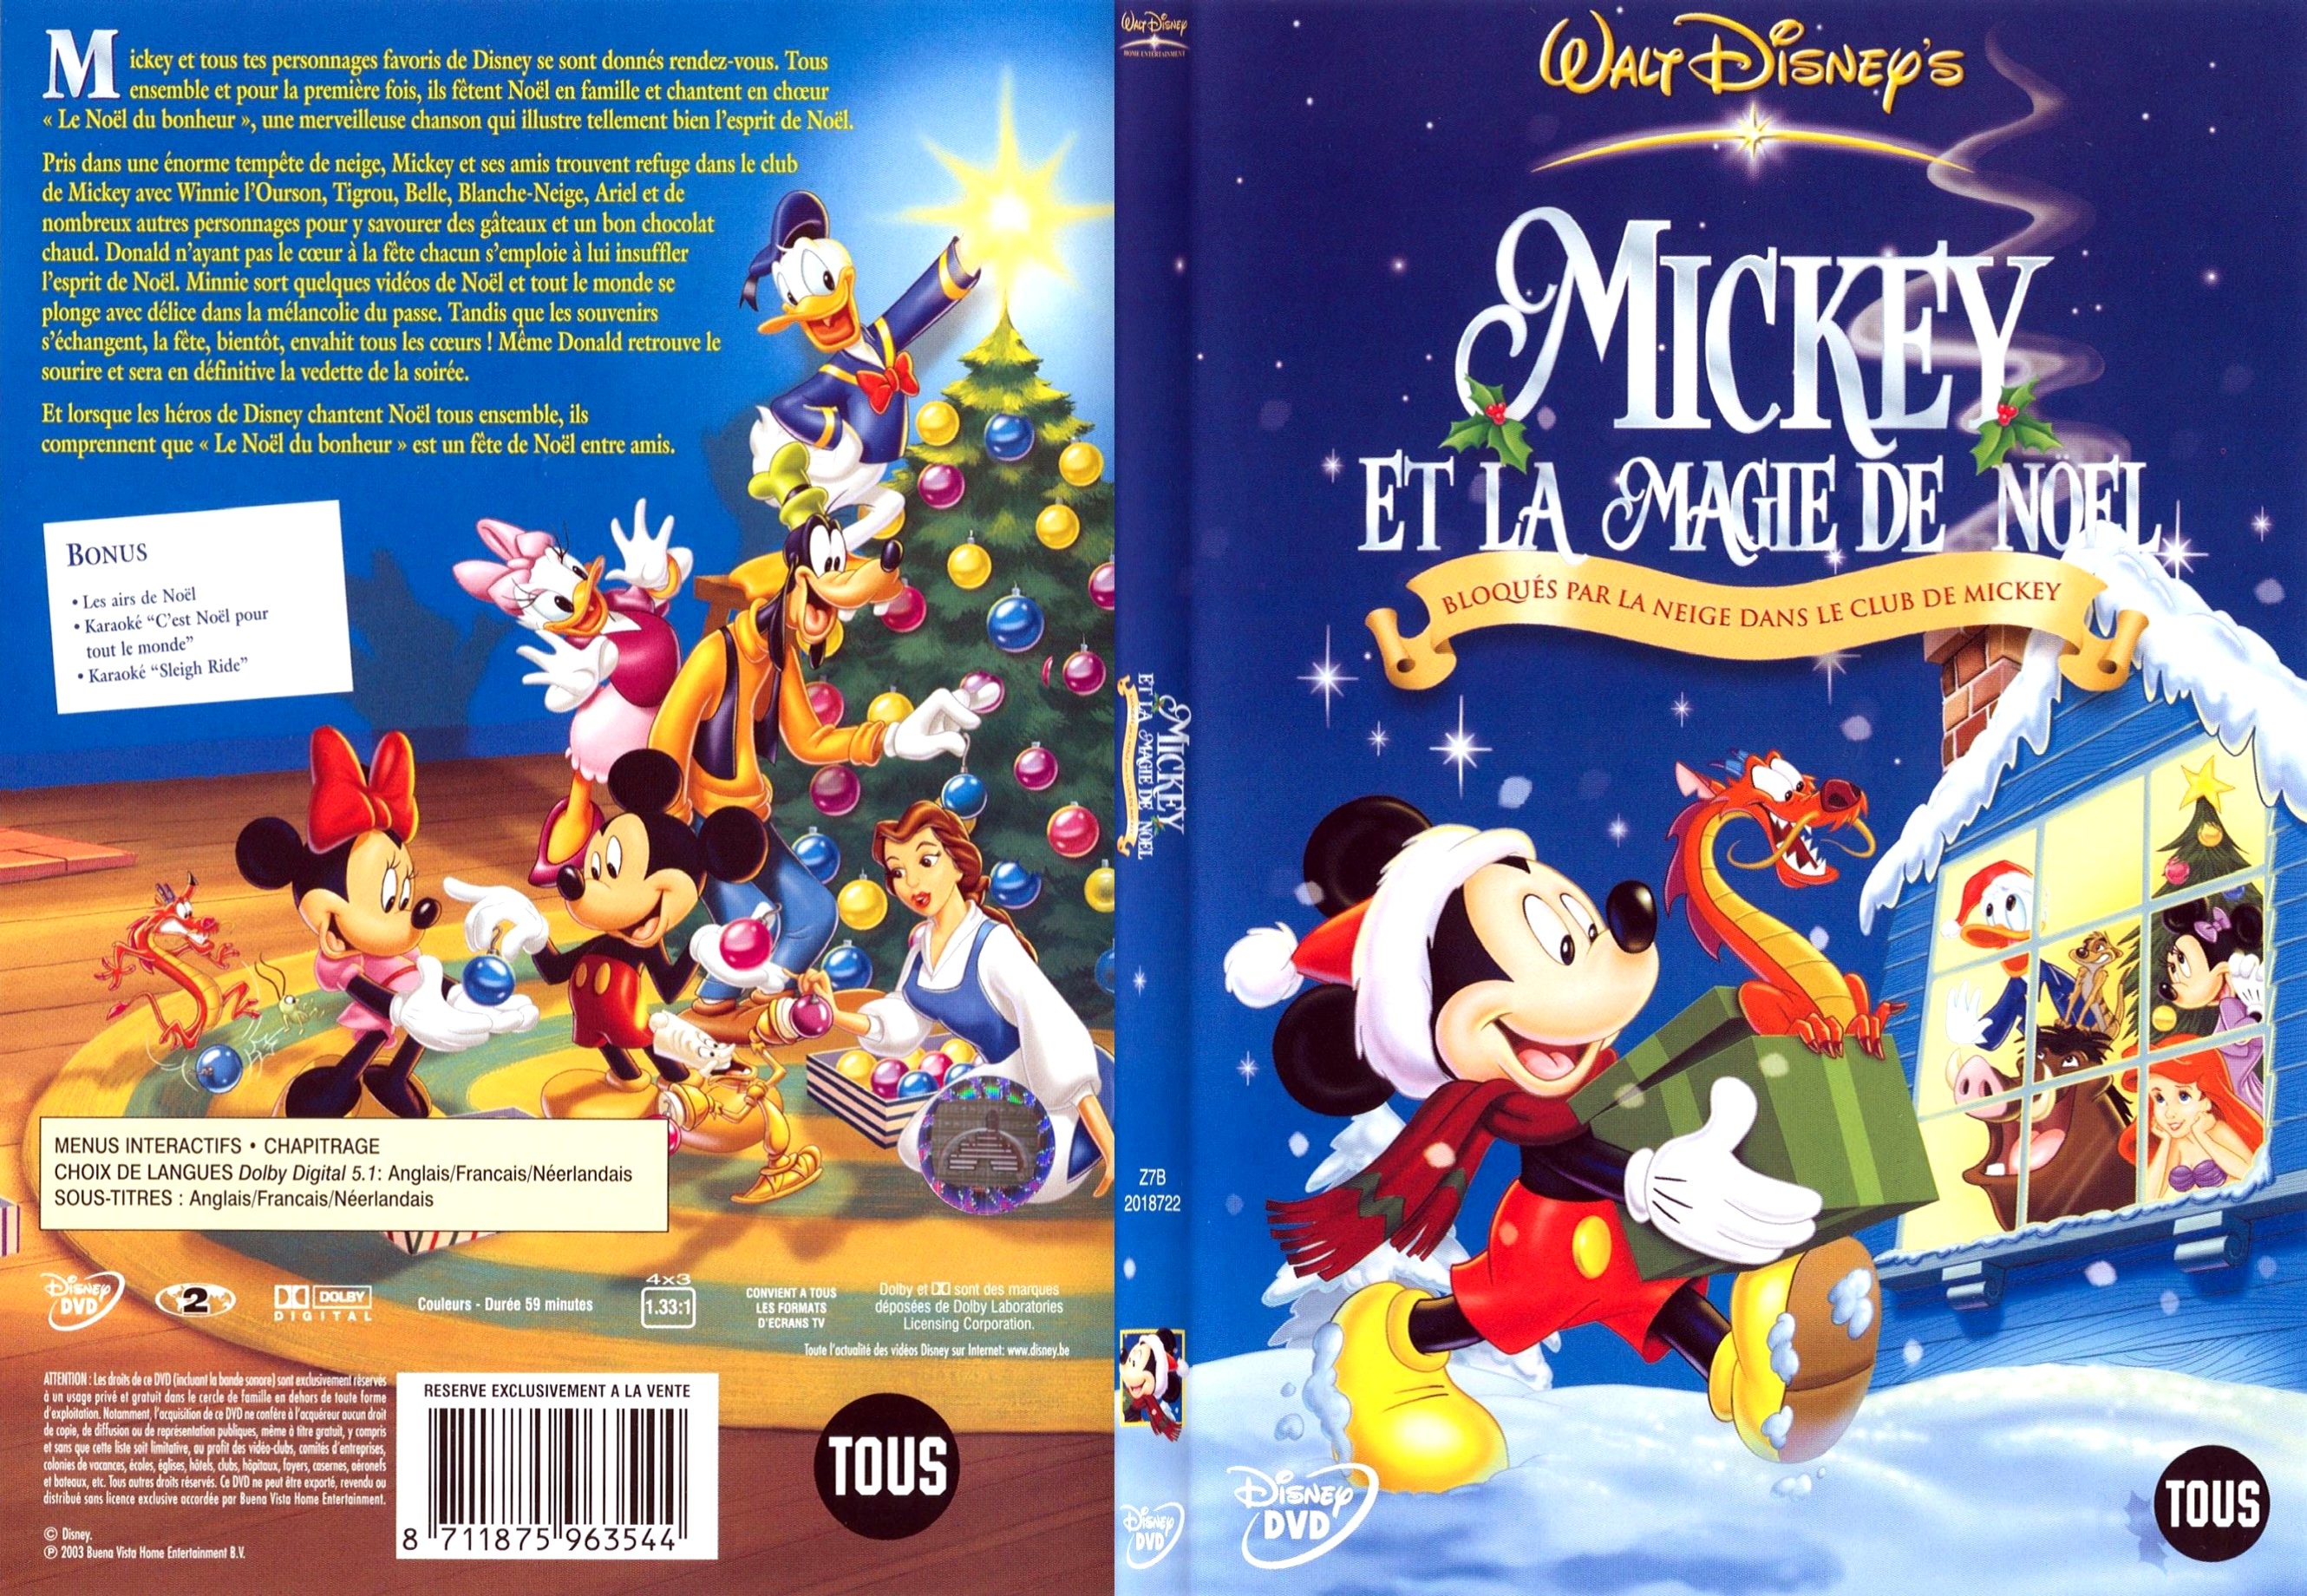 Jaquette DVD Mickey et la magie de Noel - SLIM